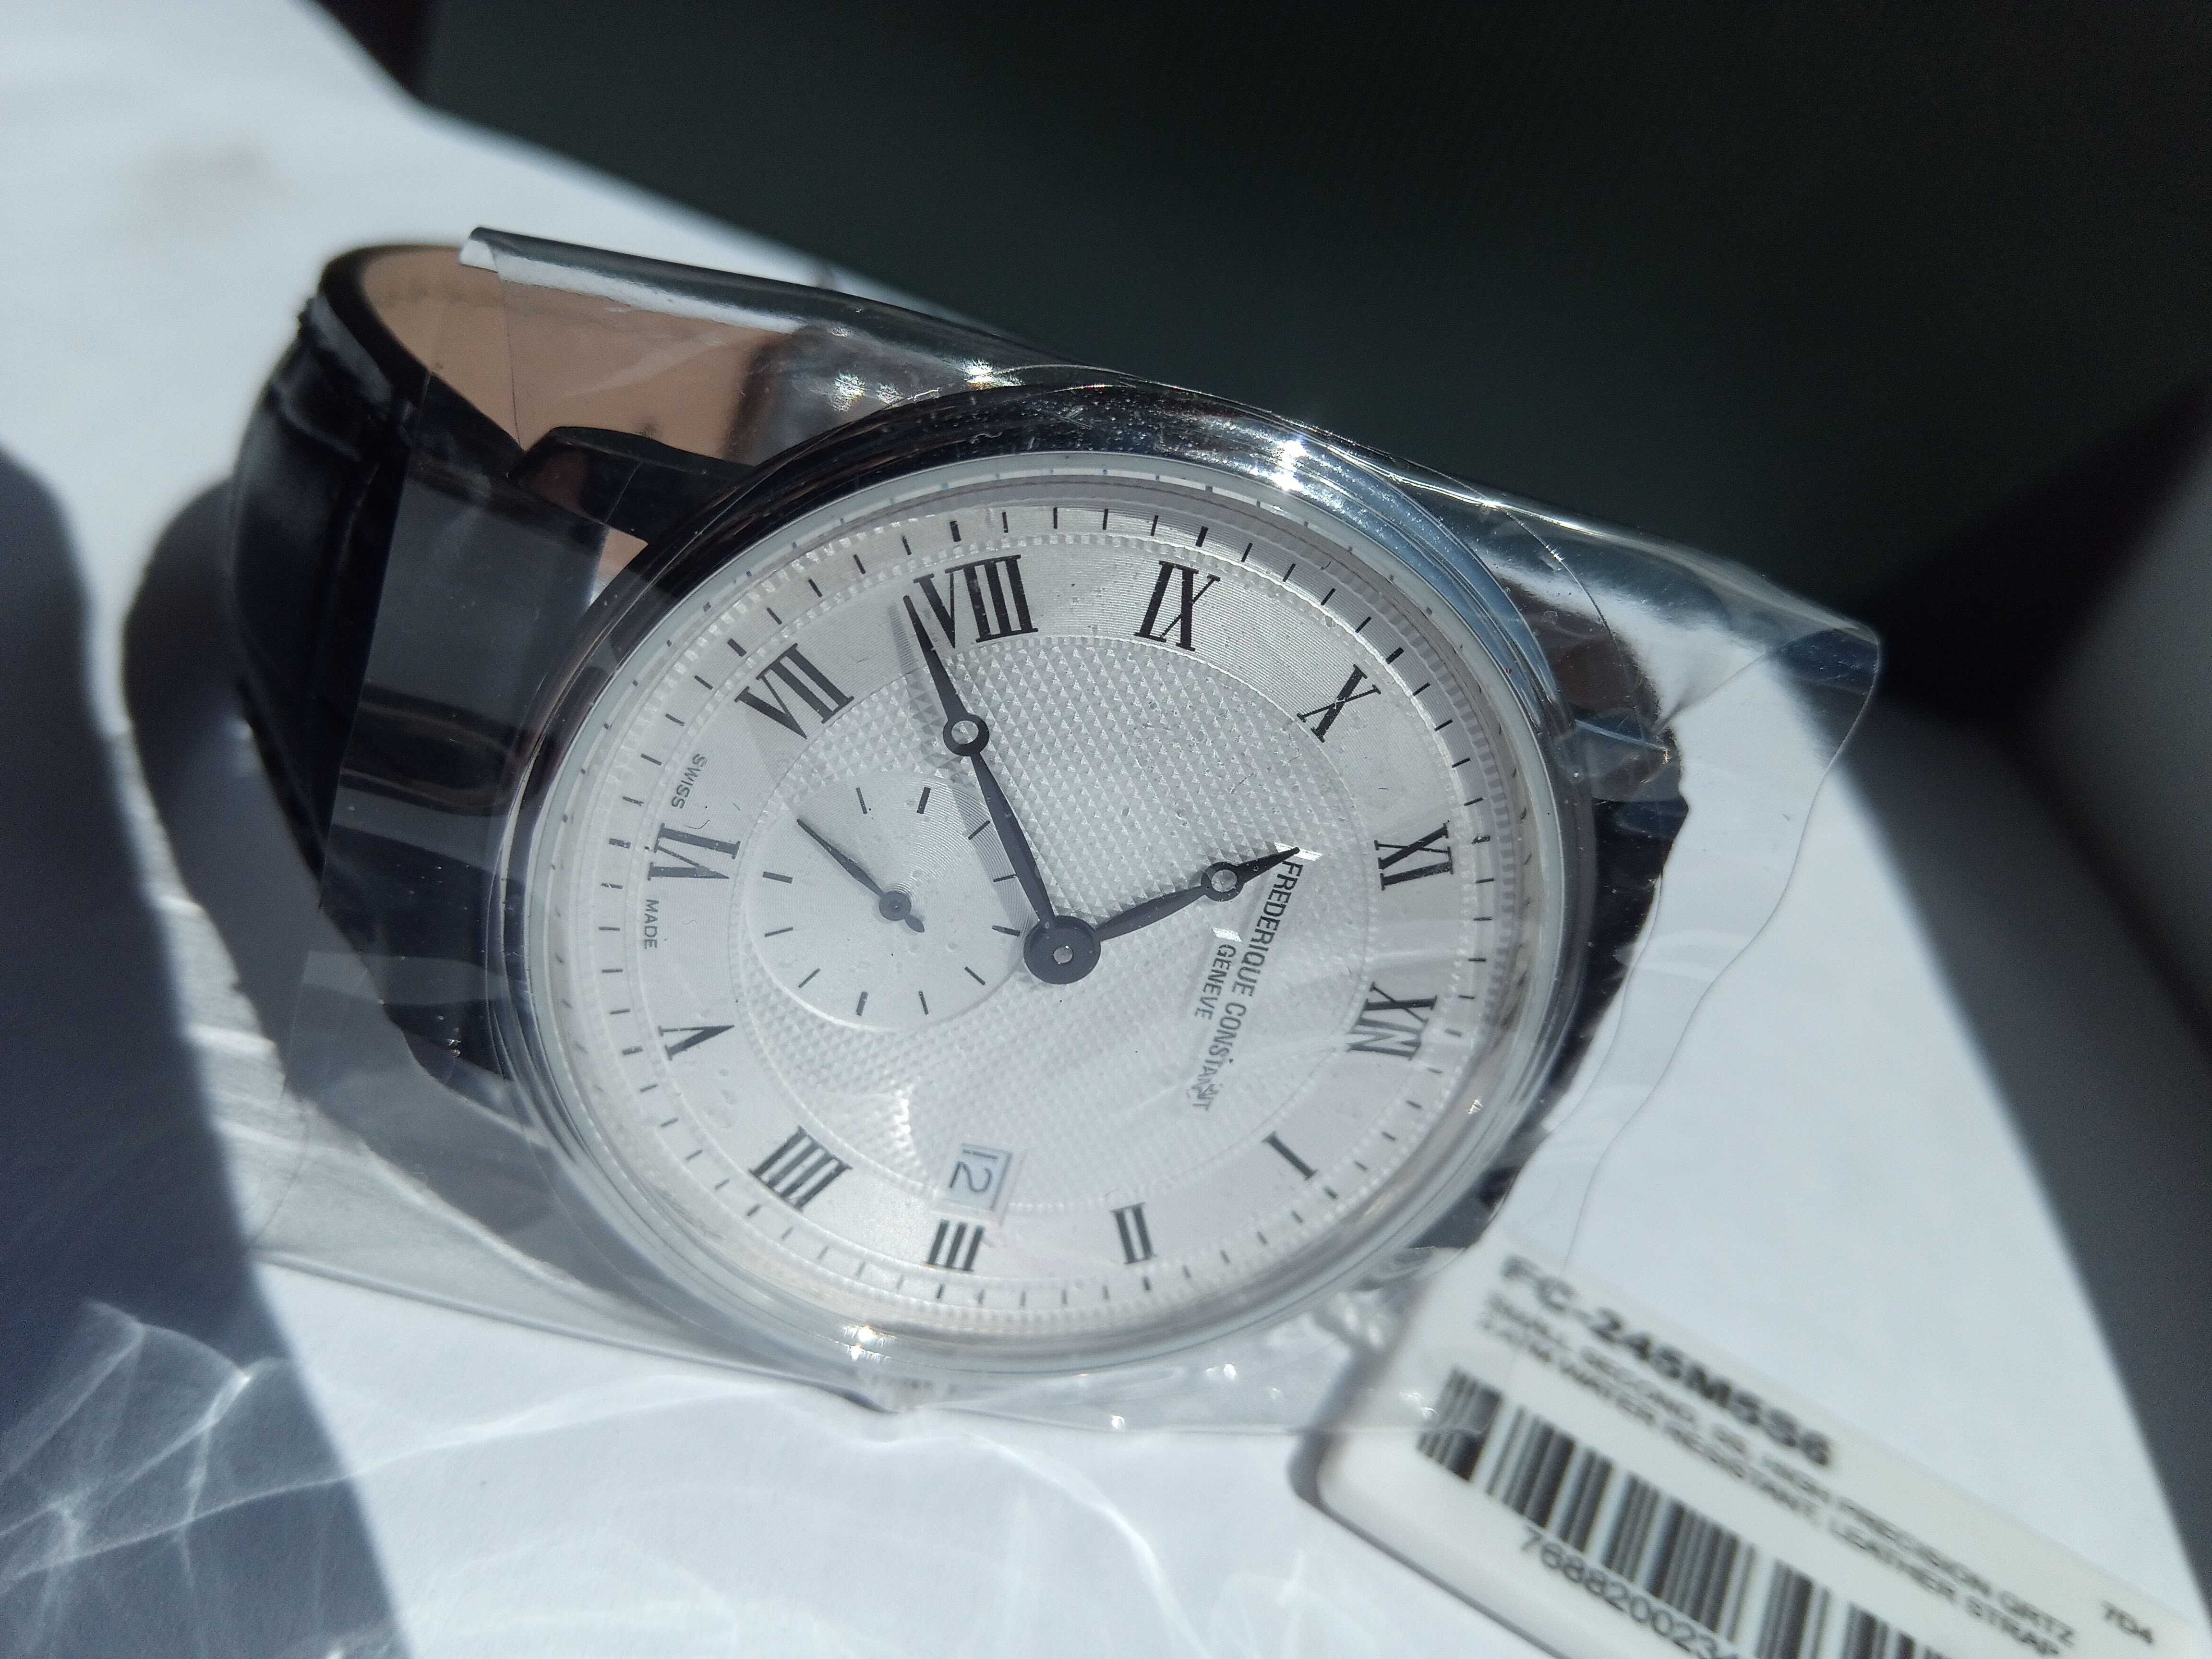 Швейцарские мужские часы Frederique Constant Женева, сапфир, РРЦ $1495